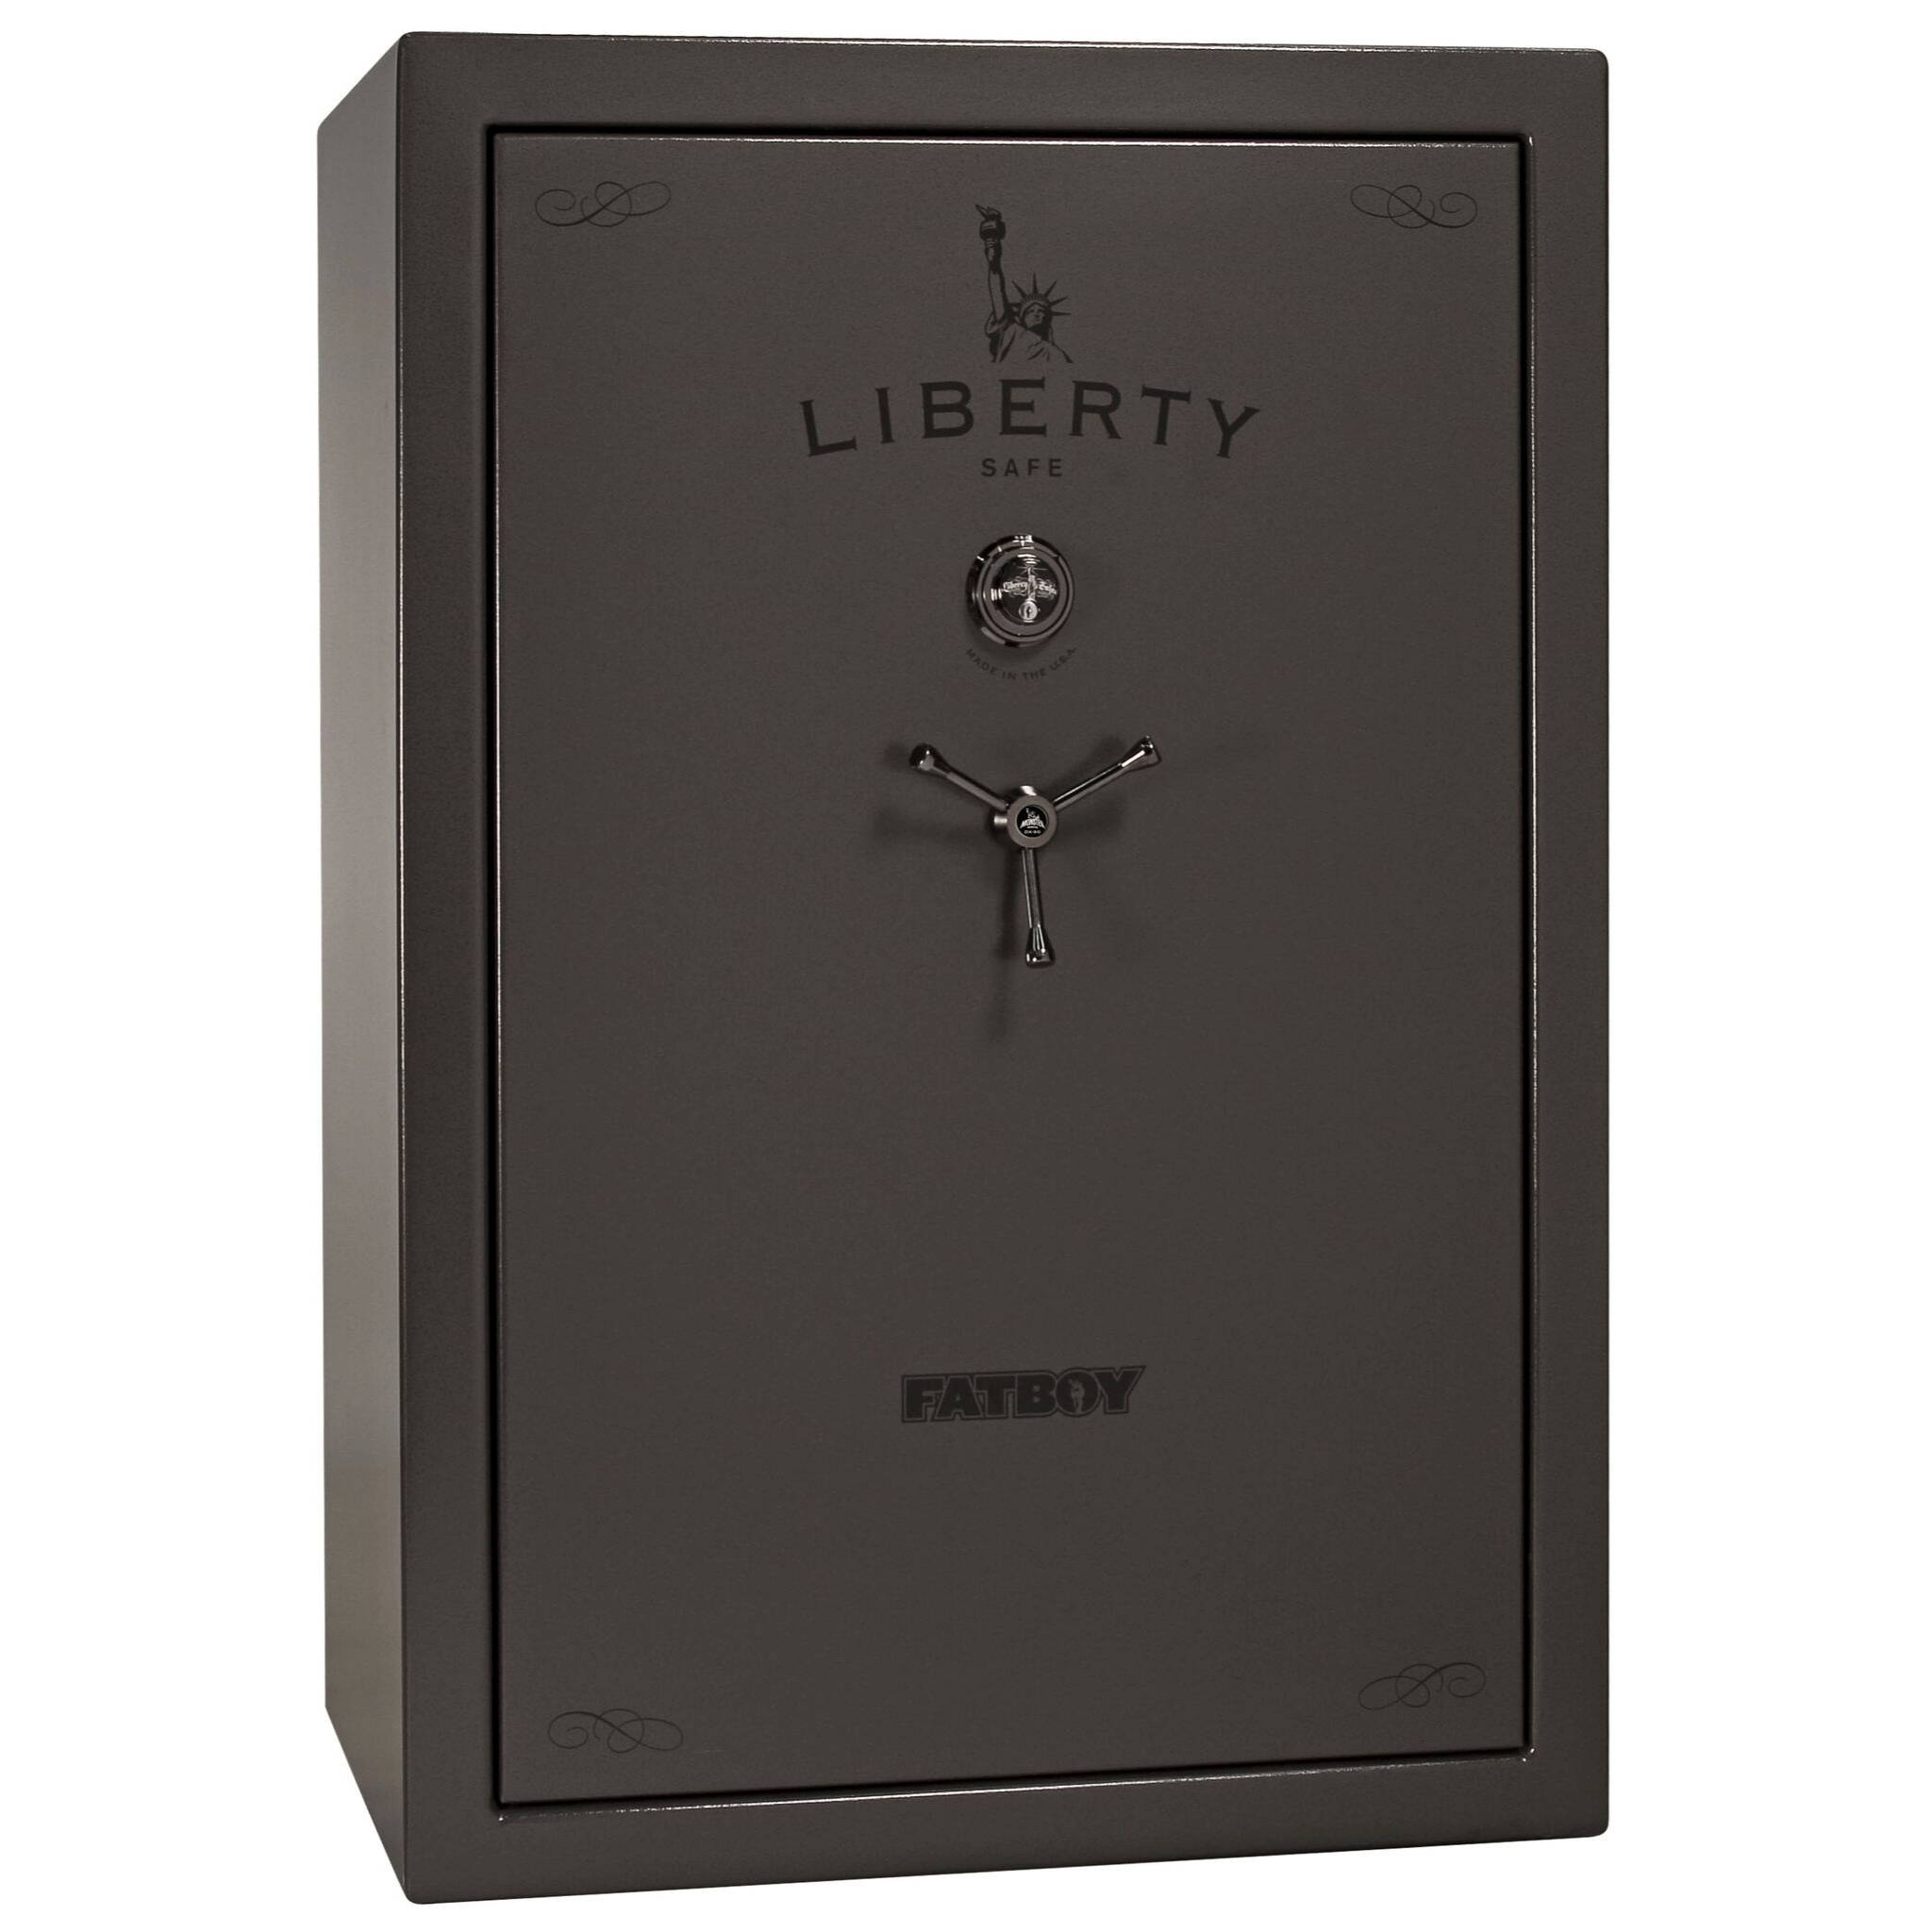 Liberty Safe Fatboy series